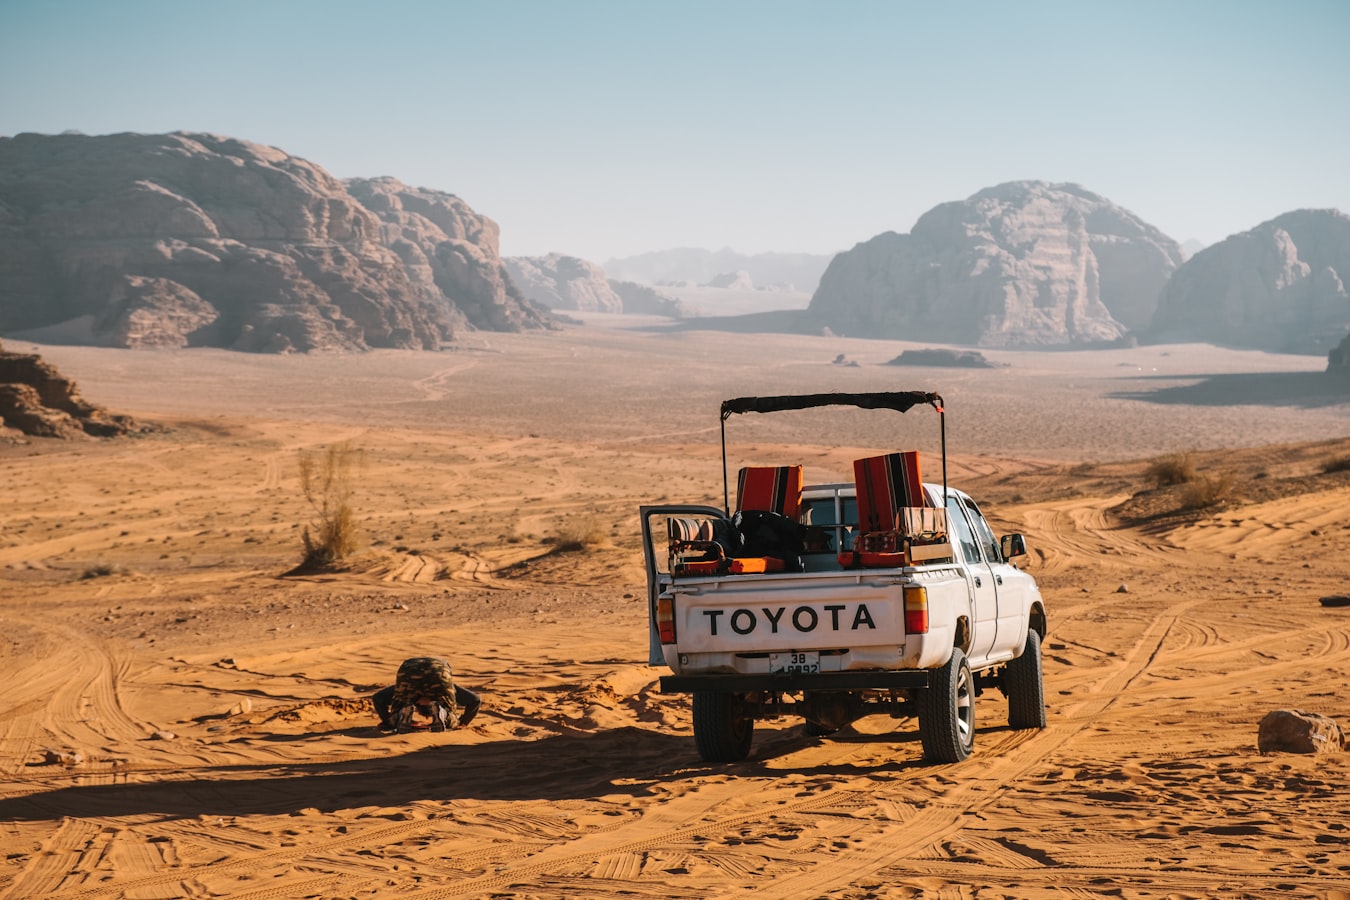 jordania-wadi-rum-jeep